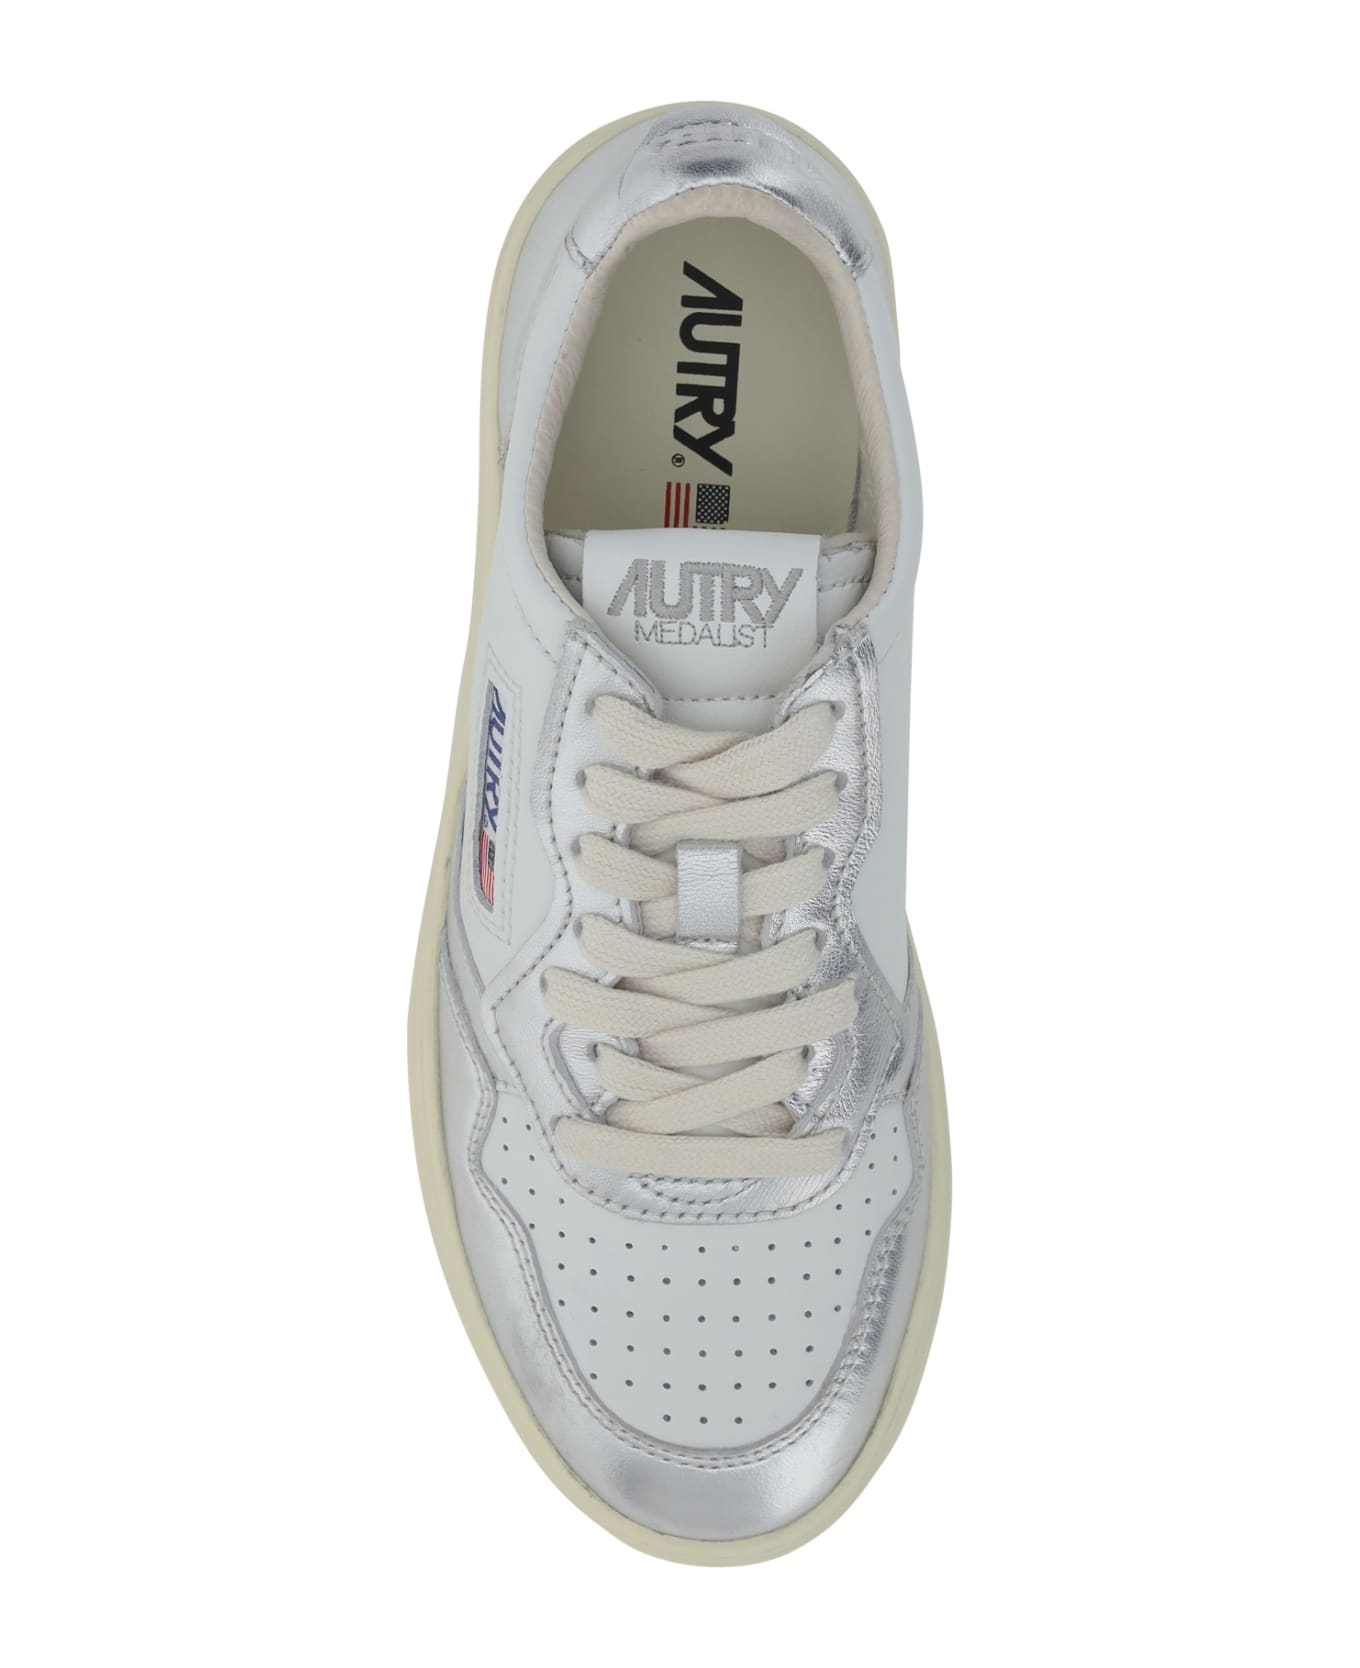 Autry Medialist Low Sneakers - Wht/silver